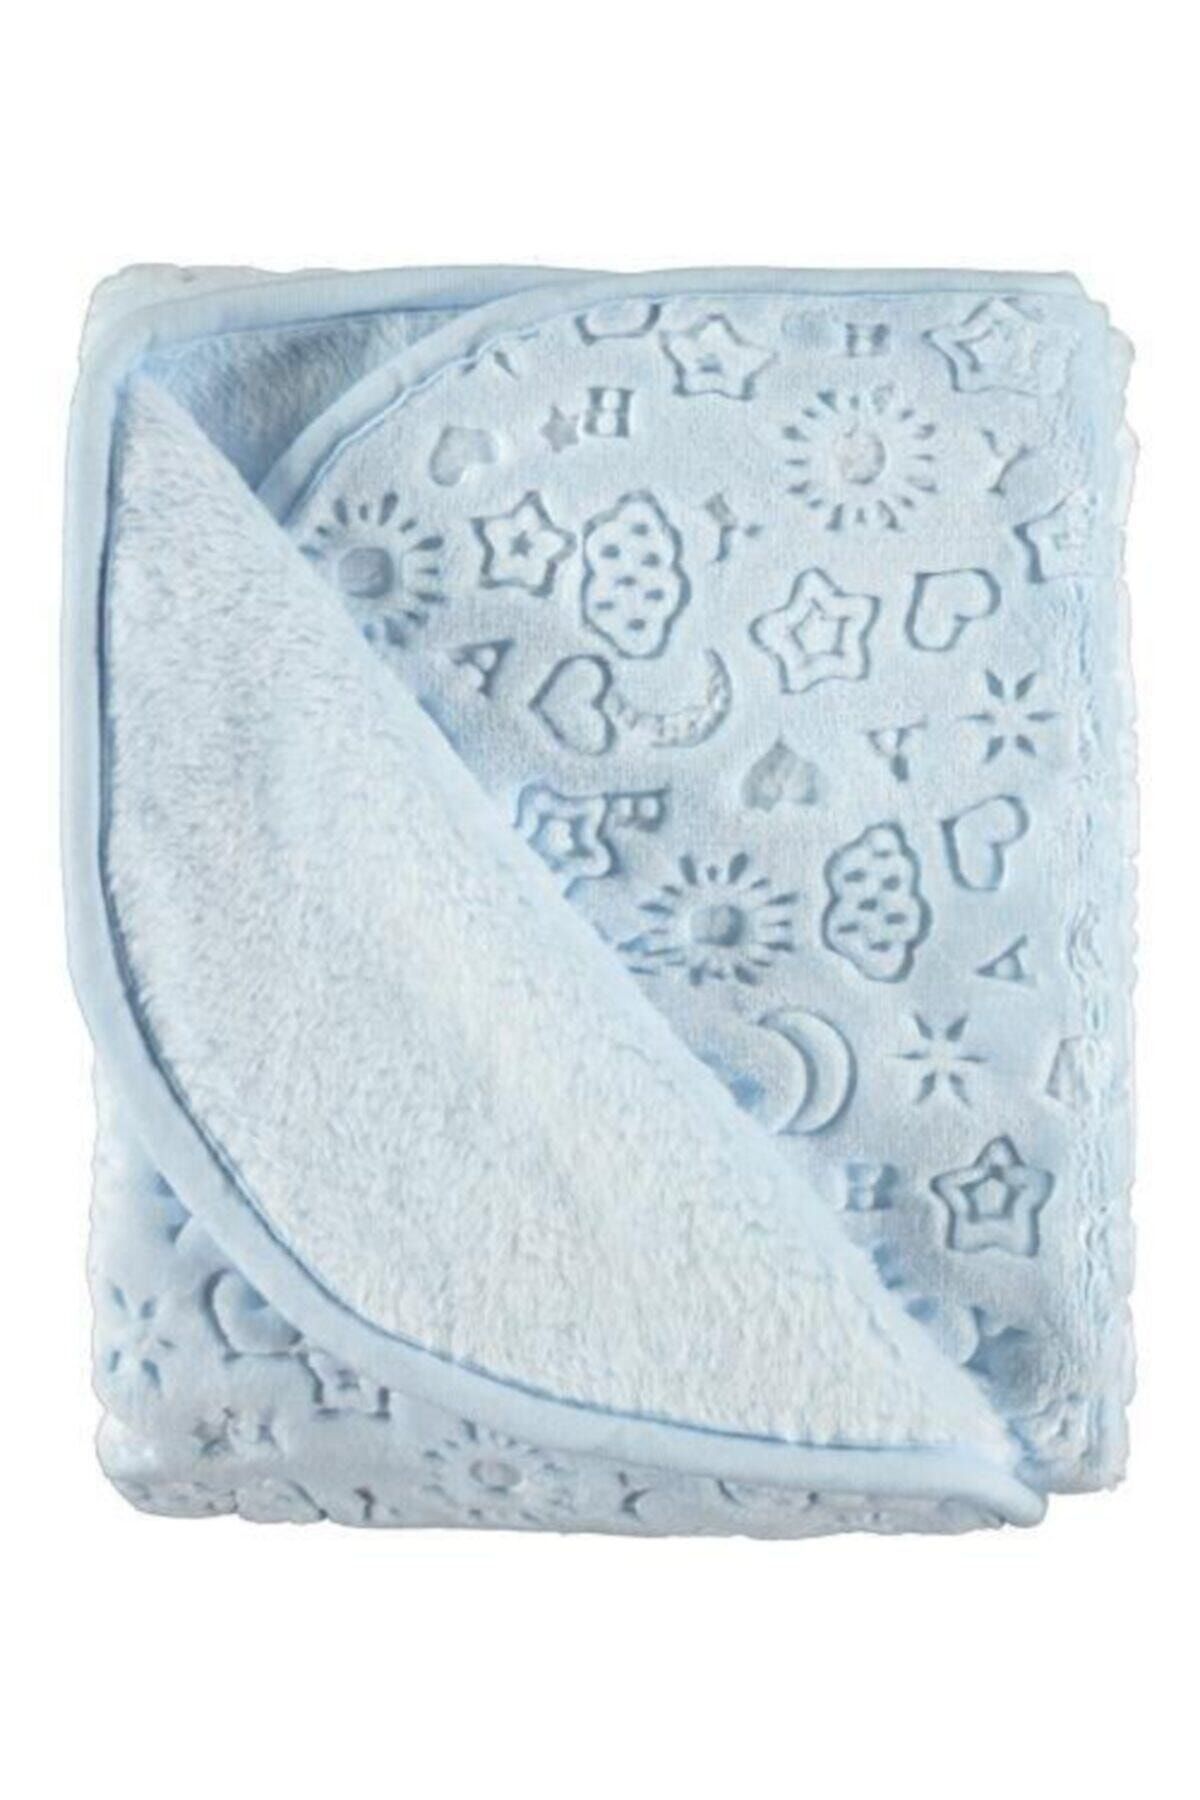 Recos Premium Kabartmalı Mavi Bebek Battaniyesi